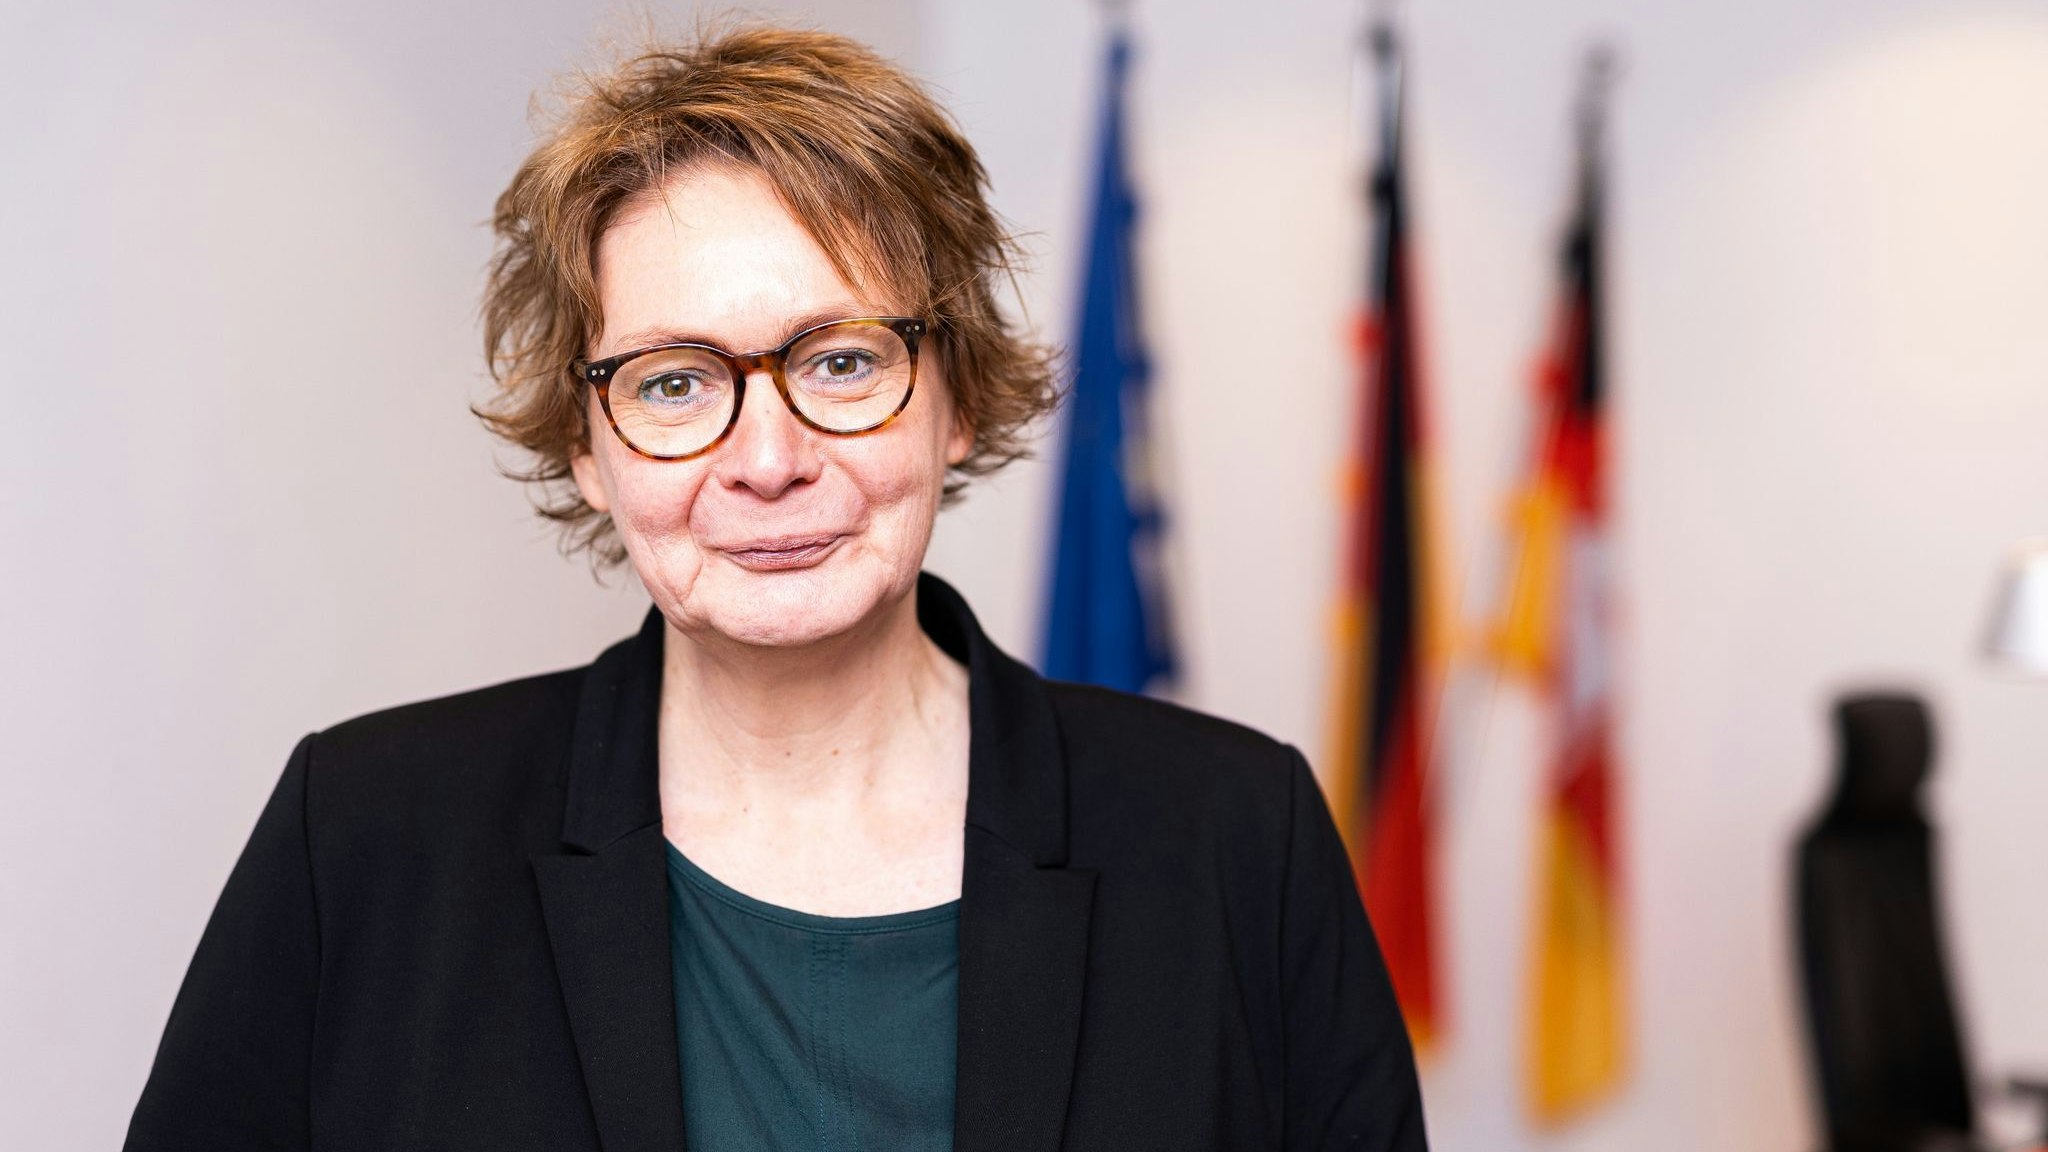 Daniela Behrens (SPD) ist neue Innenministerin von Niedersachsen. Foto: dpa